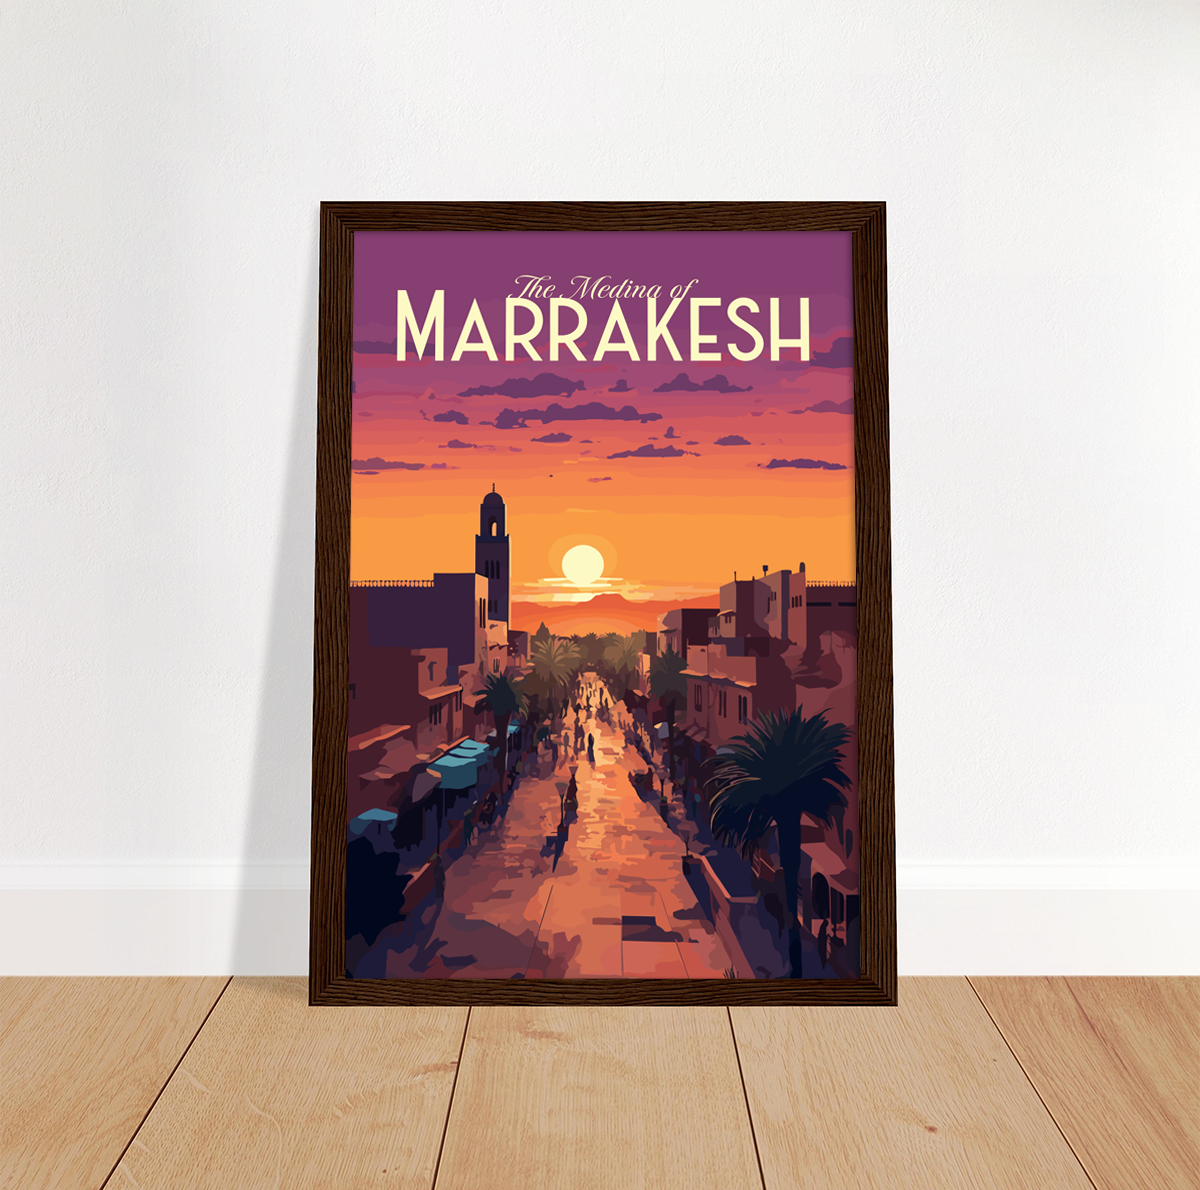 Marrakesh poster by bon voyage design